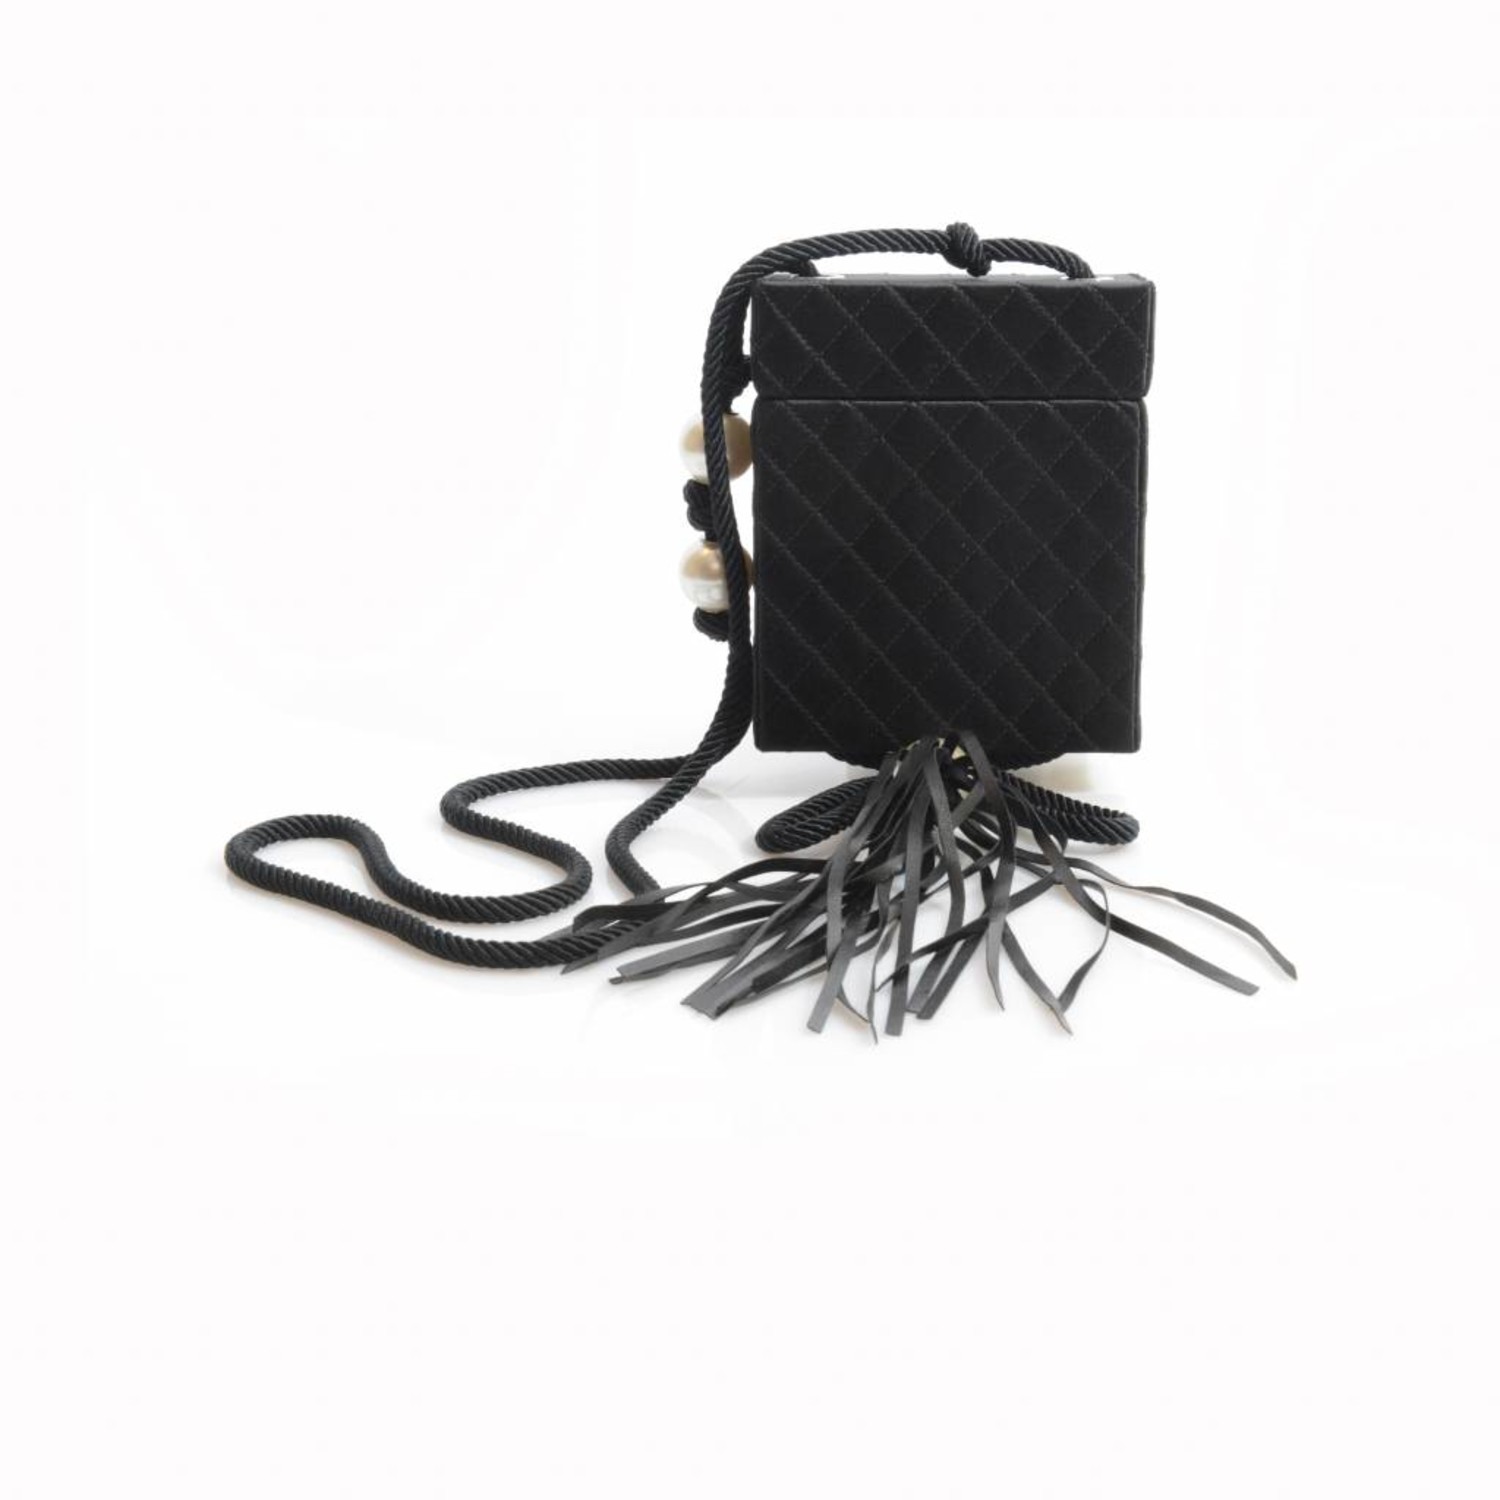 Chanel Fringe Bag - 57 For Sale on 1stDibs